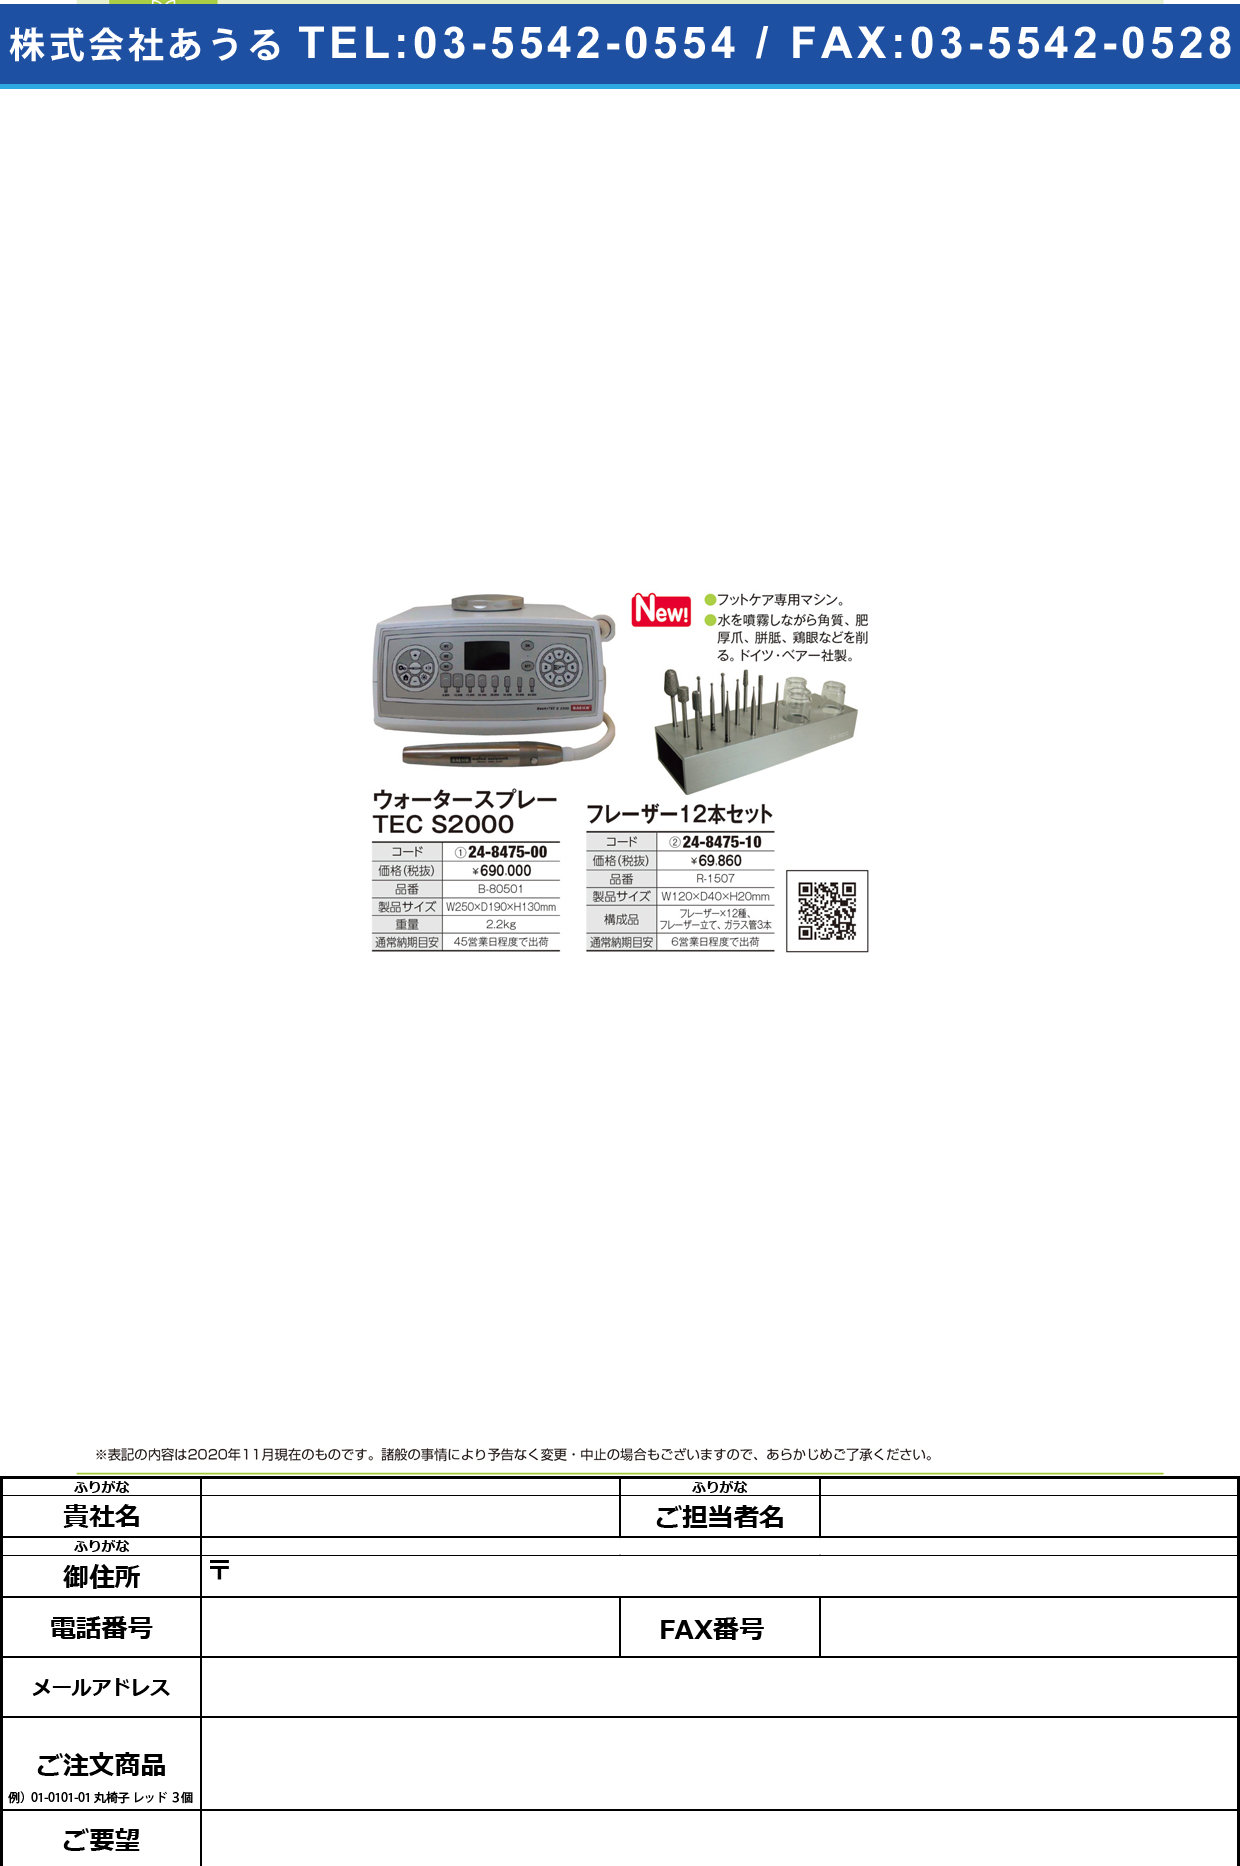 ウォータースプレー用フレーザーセットR-1507(12ホンセット)R-1507(12ﾎﾝｾｯﾄ)(24-8475-10)【リフレプロジャパン】(販売単位:1)